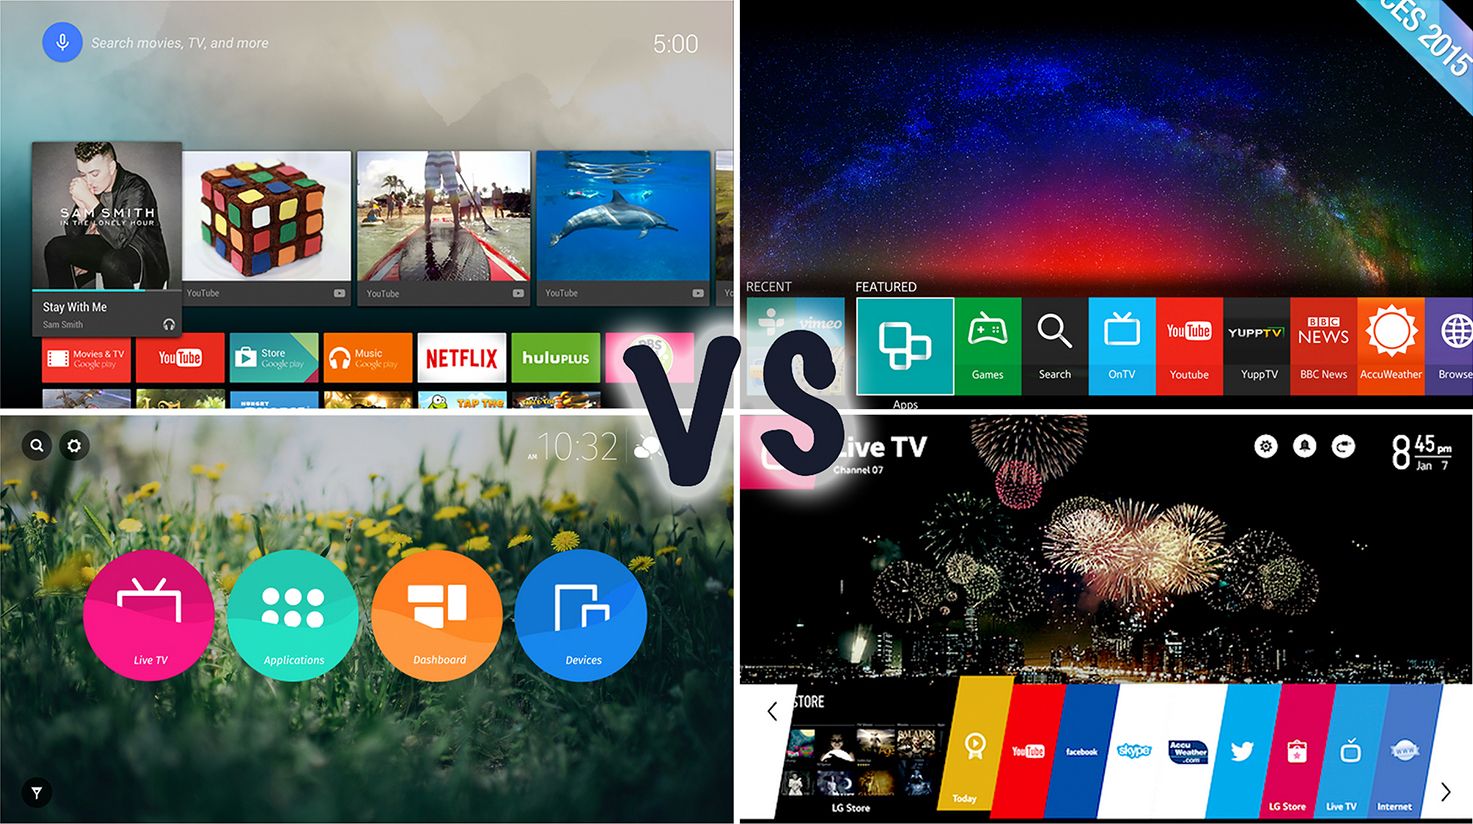 FIFA+ app now available on FireTV, LG webOS, Samsung Tizen - FlatpanelsHD